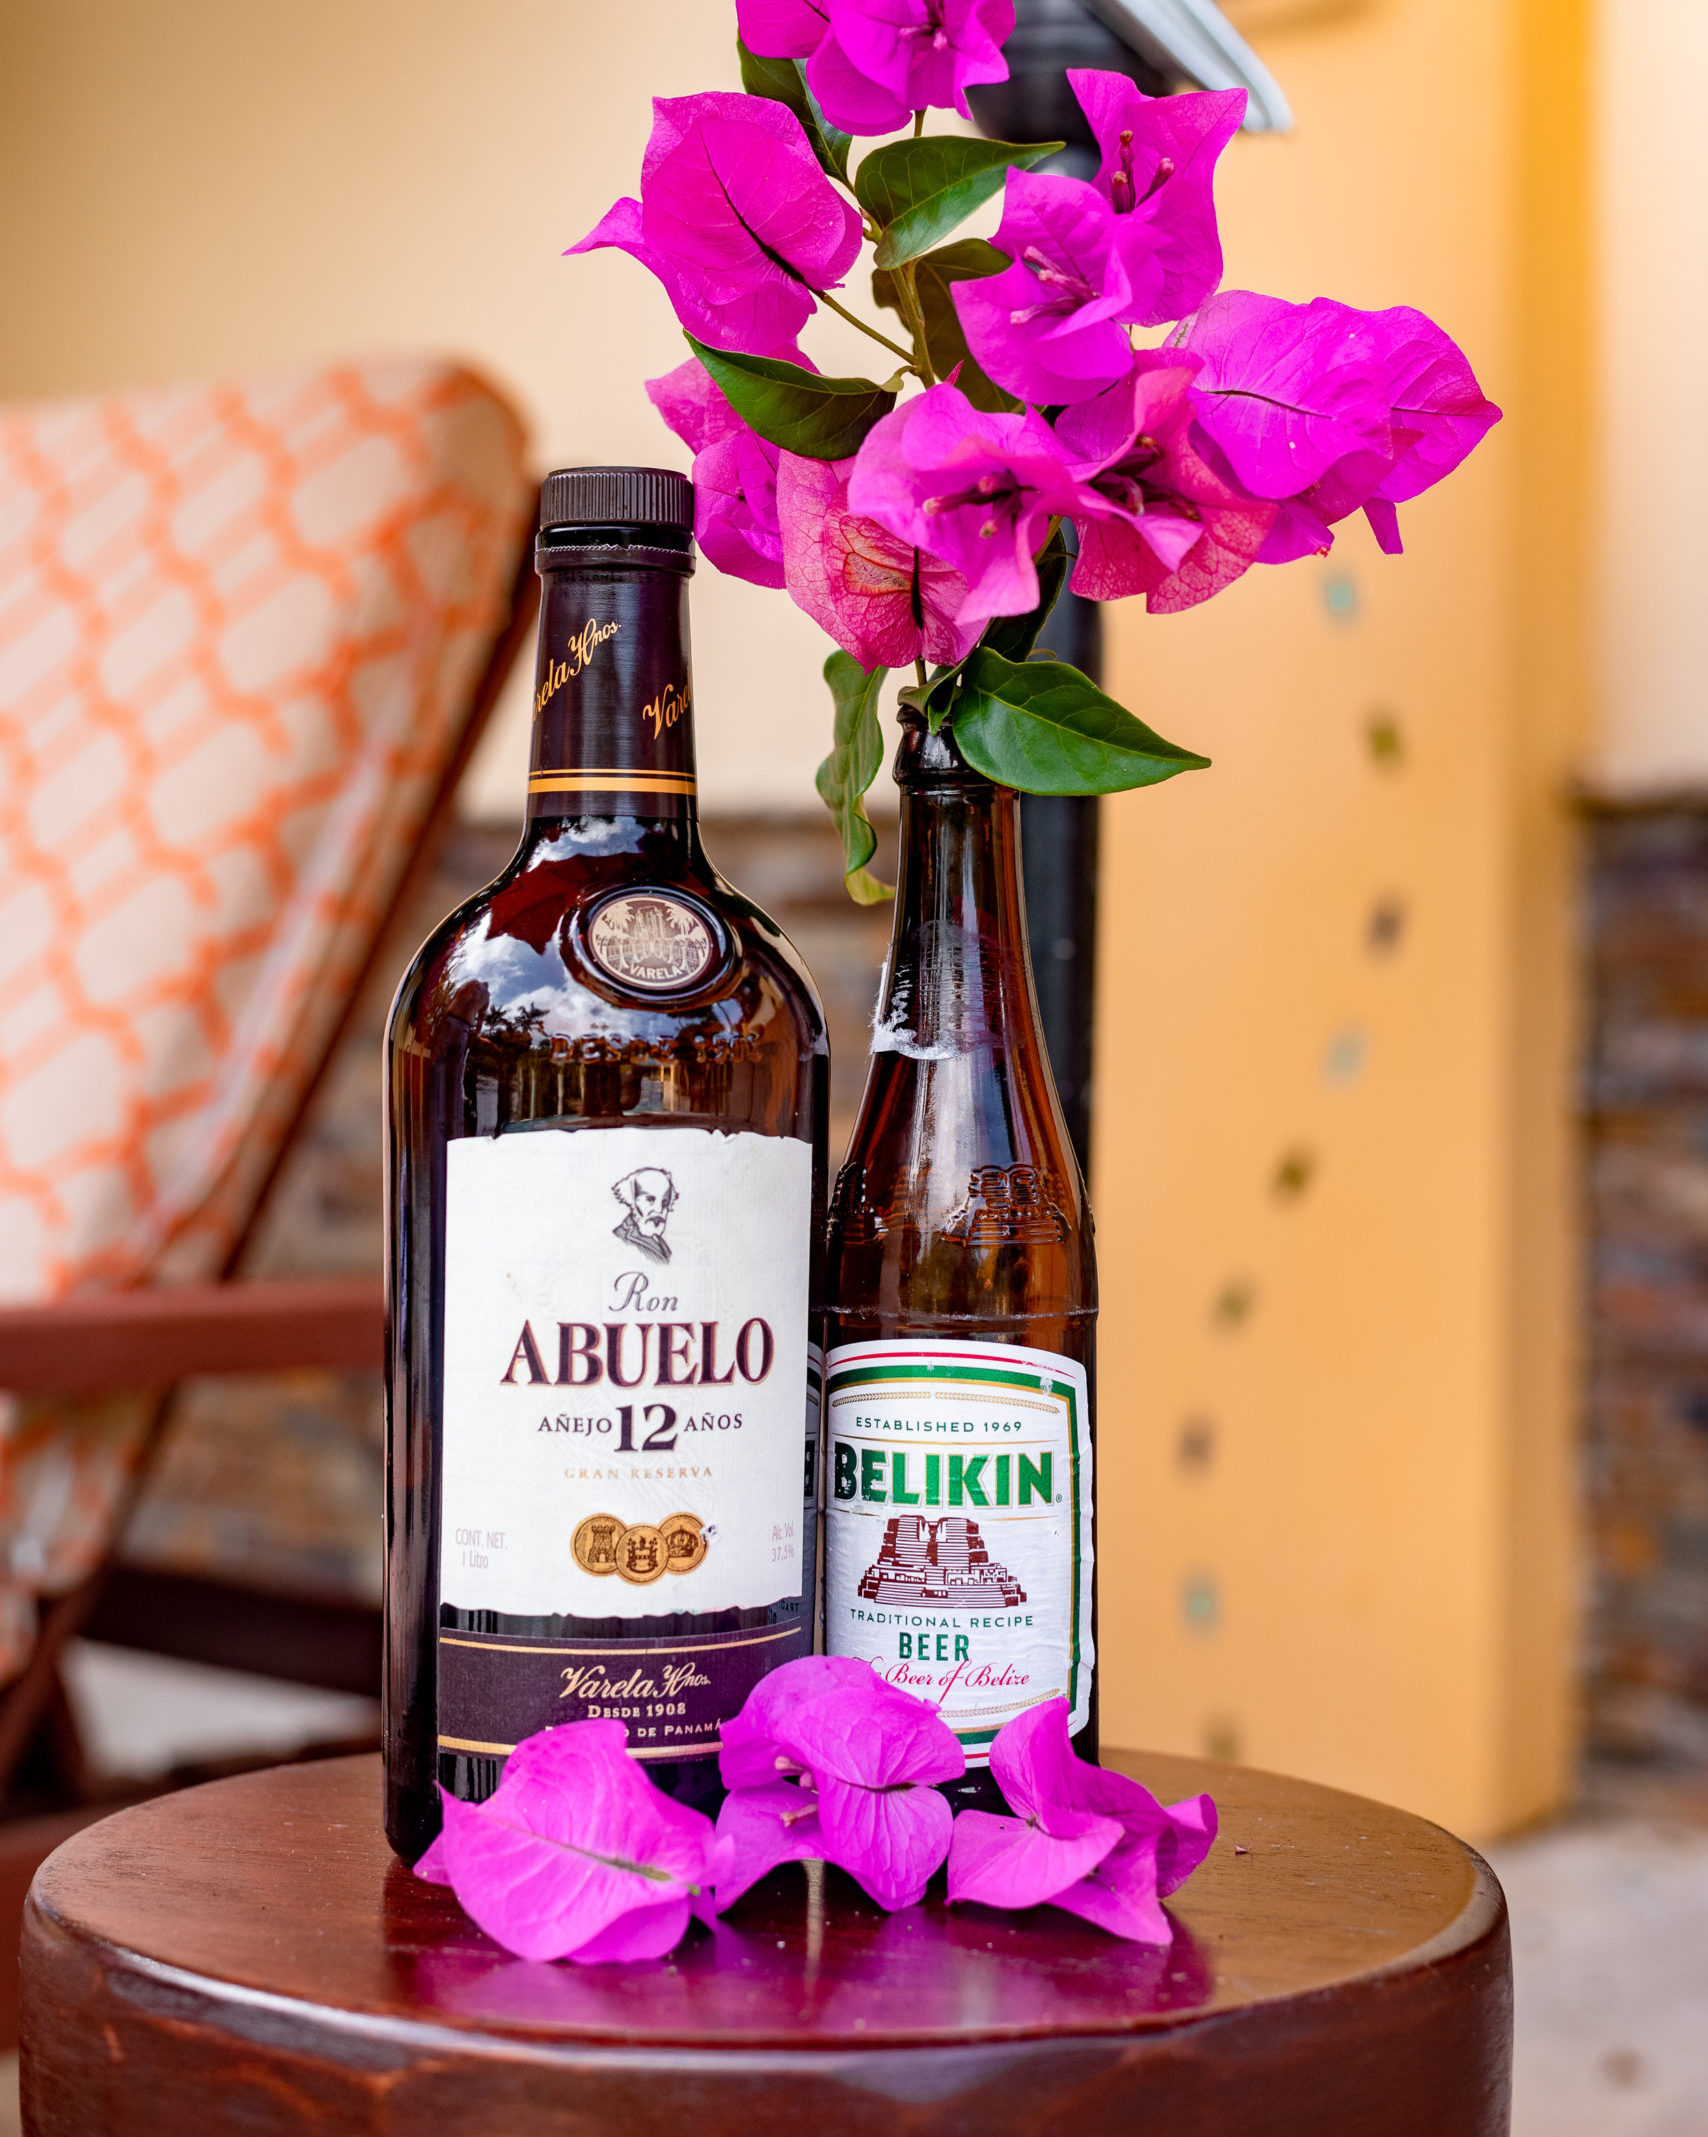 Ron Abuelo Panamanian Rum, Belikin Beer in Belize